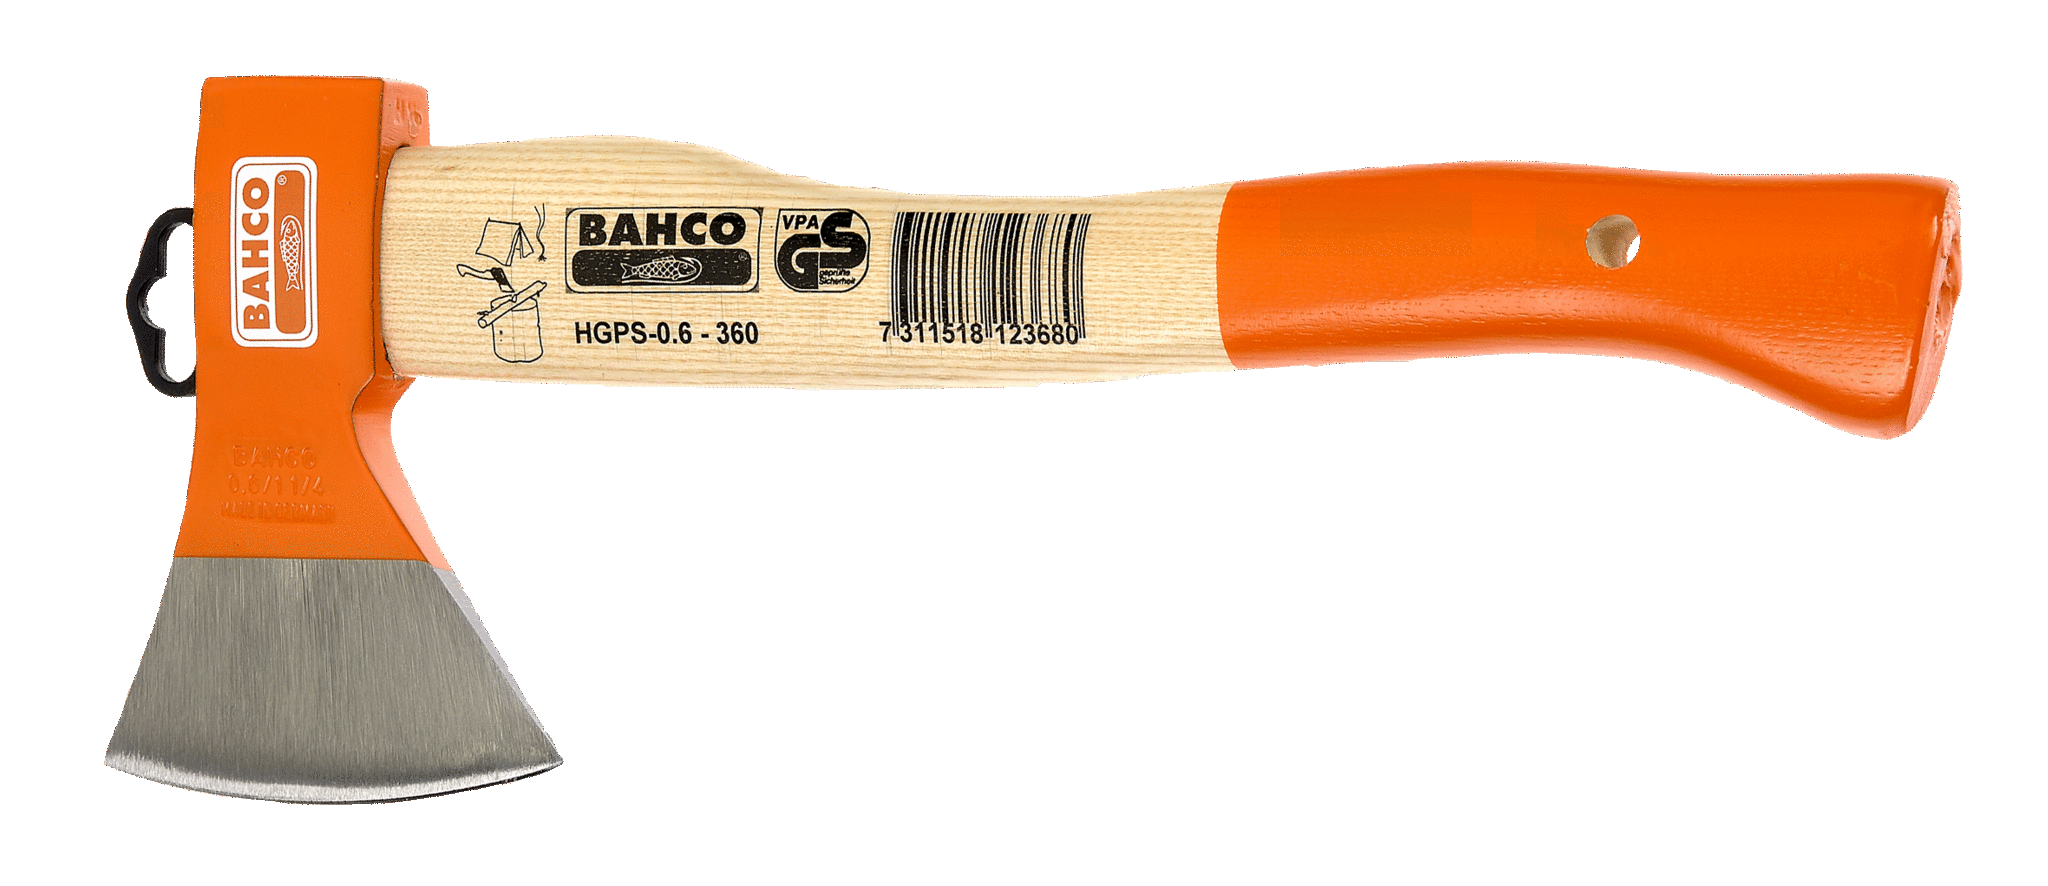 Туристский топор универсальный, деревянная рукоятка BAHCO HGPS-1.0-400